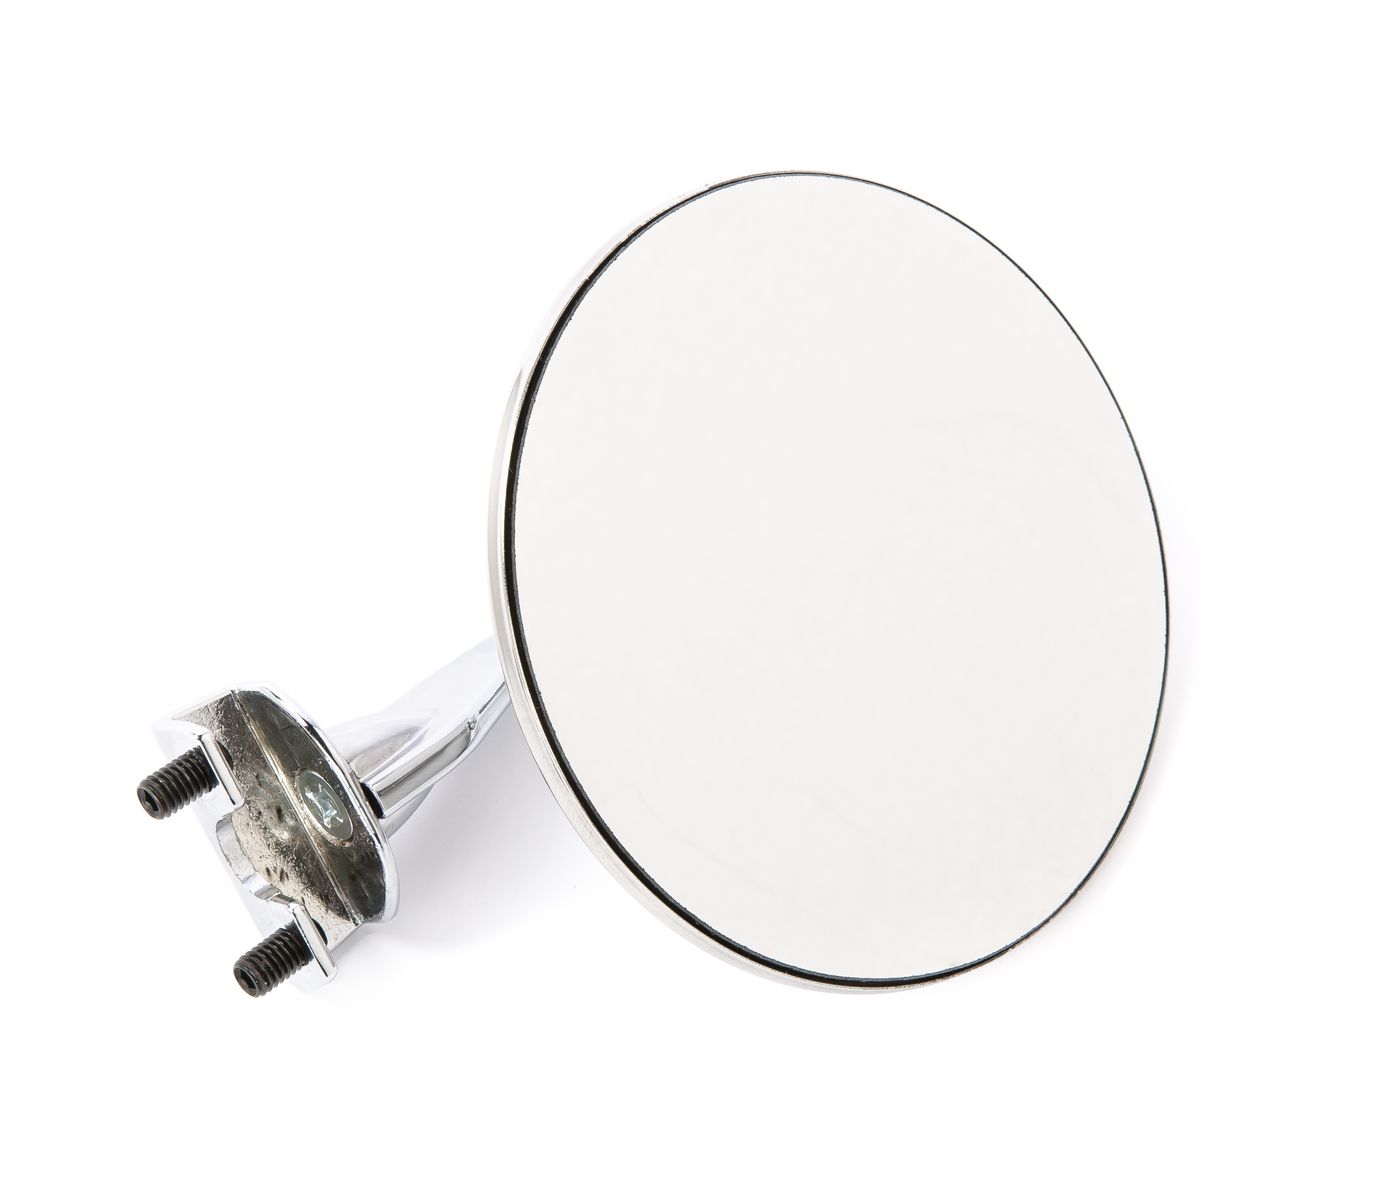 Klemmspiegel
Clamp-on mirror
Rétroviseur par serrage
Klemspiege